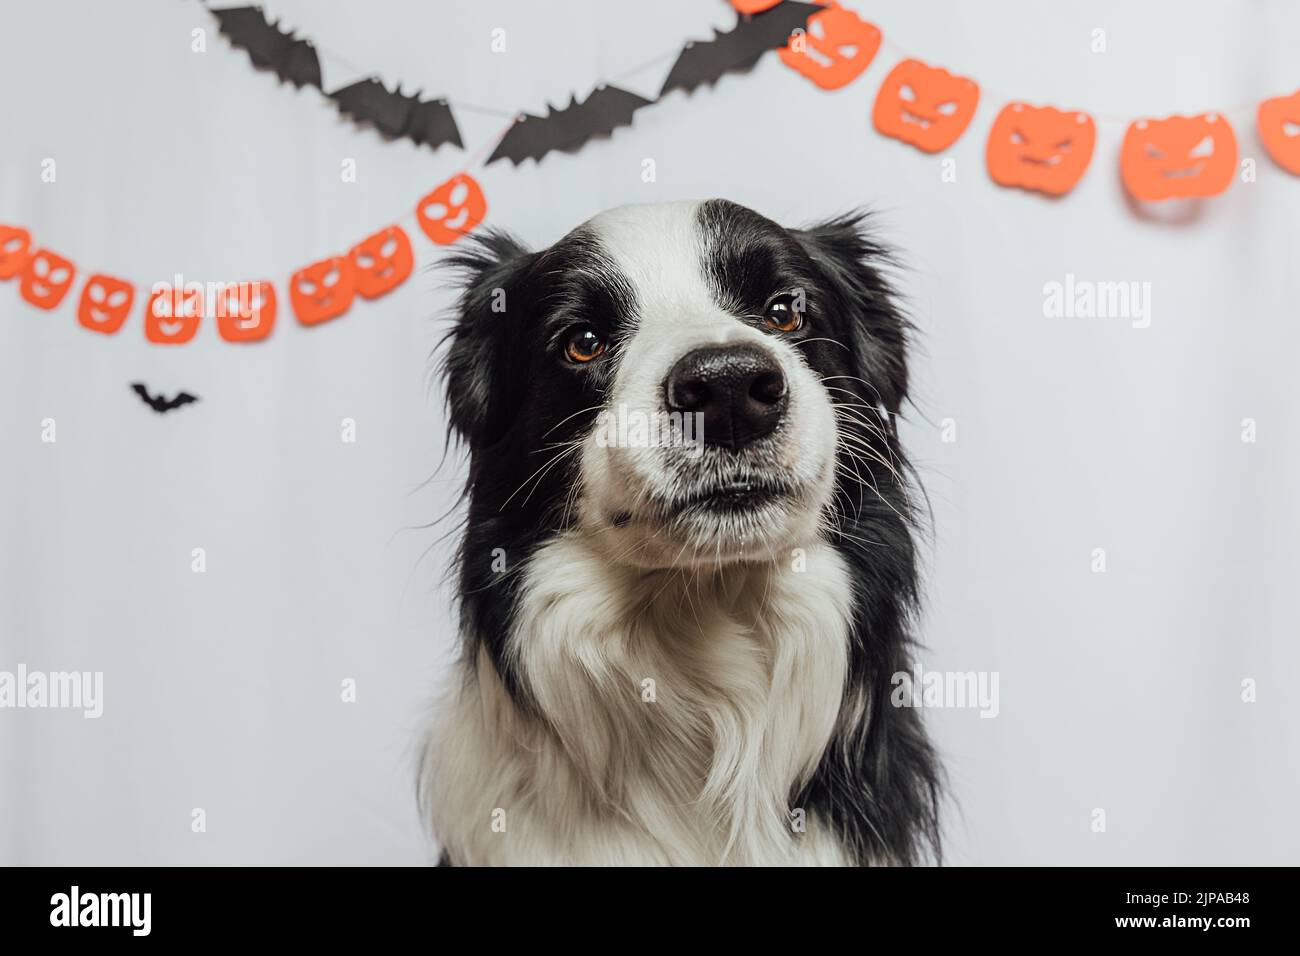 Trick or Treat-Konzept. Lustige Welpen Hund Border Collie auf weißem Hintergrund mit halloween Girlande Dekorationen. Vorbereitung für Halloween-Party Stockfoto